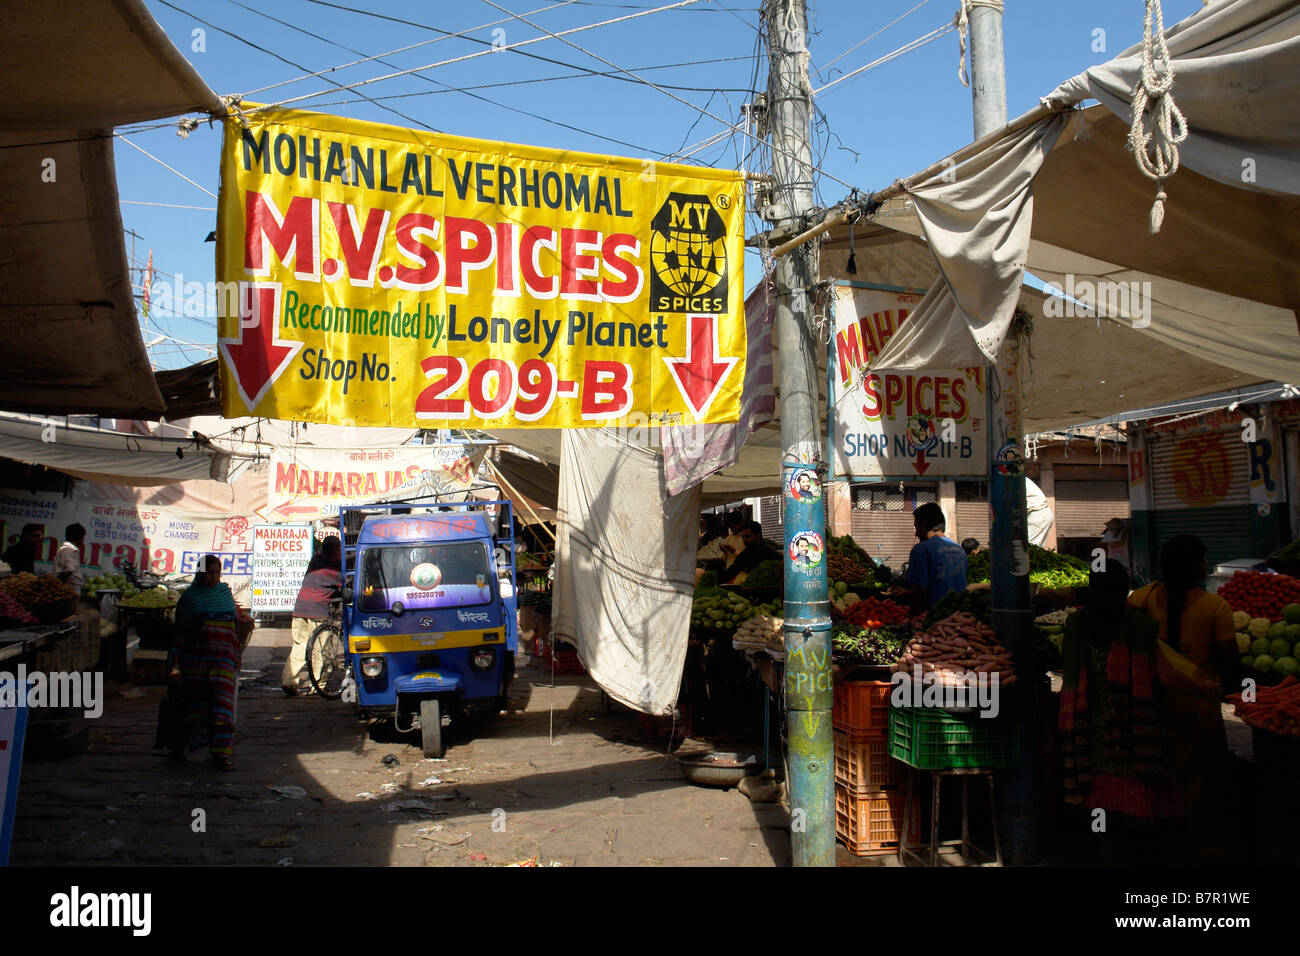 Lonely Planet consiglia il negozio nella vecchia zona del mercato di jodhpur Foto Stock